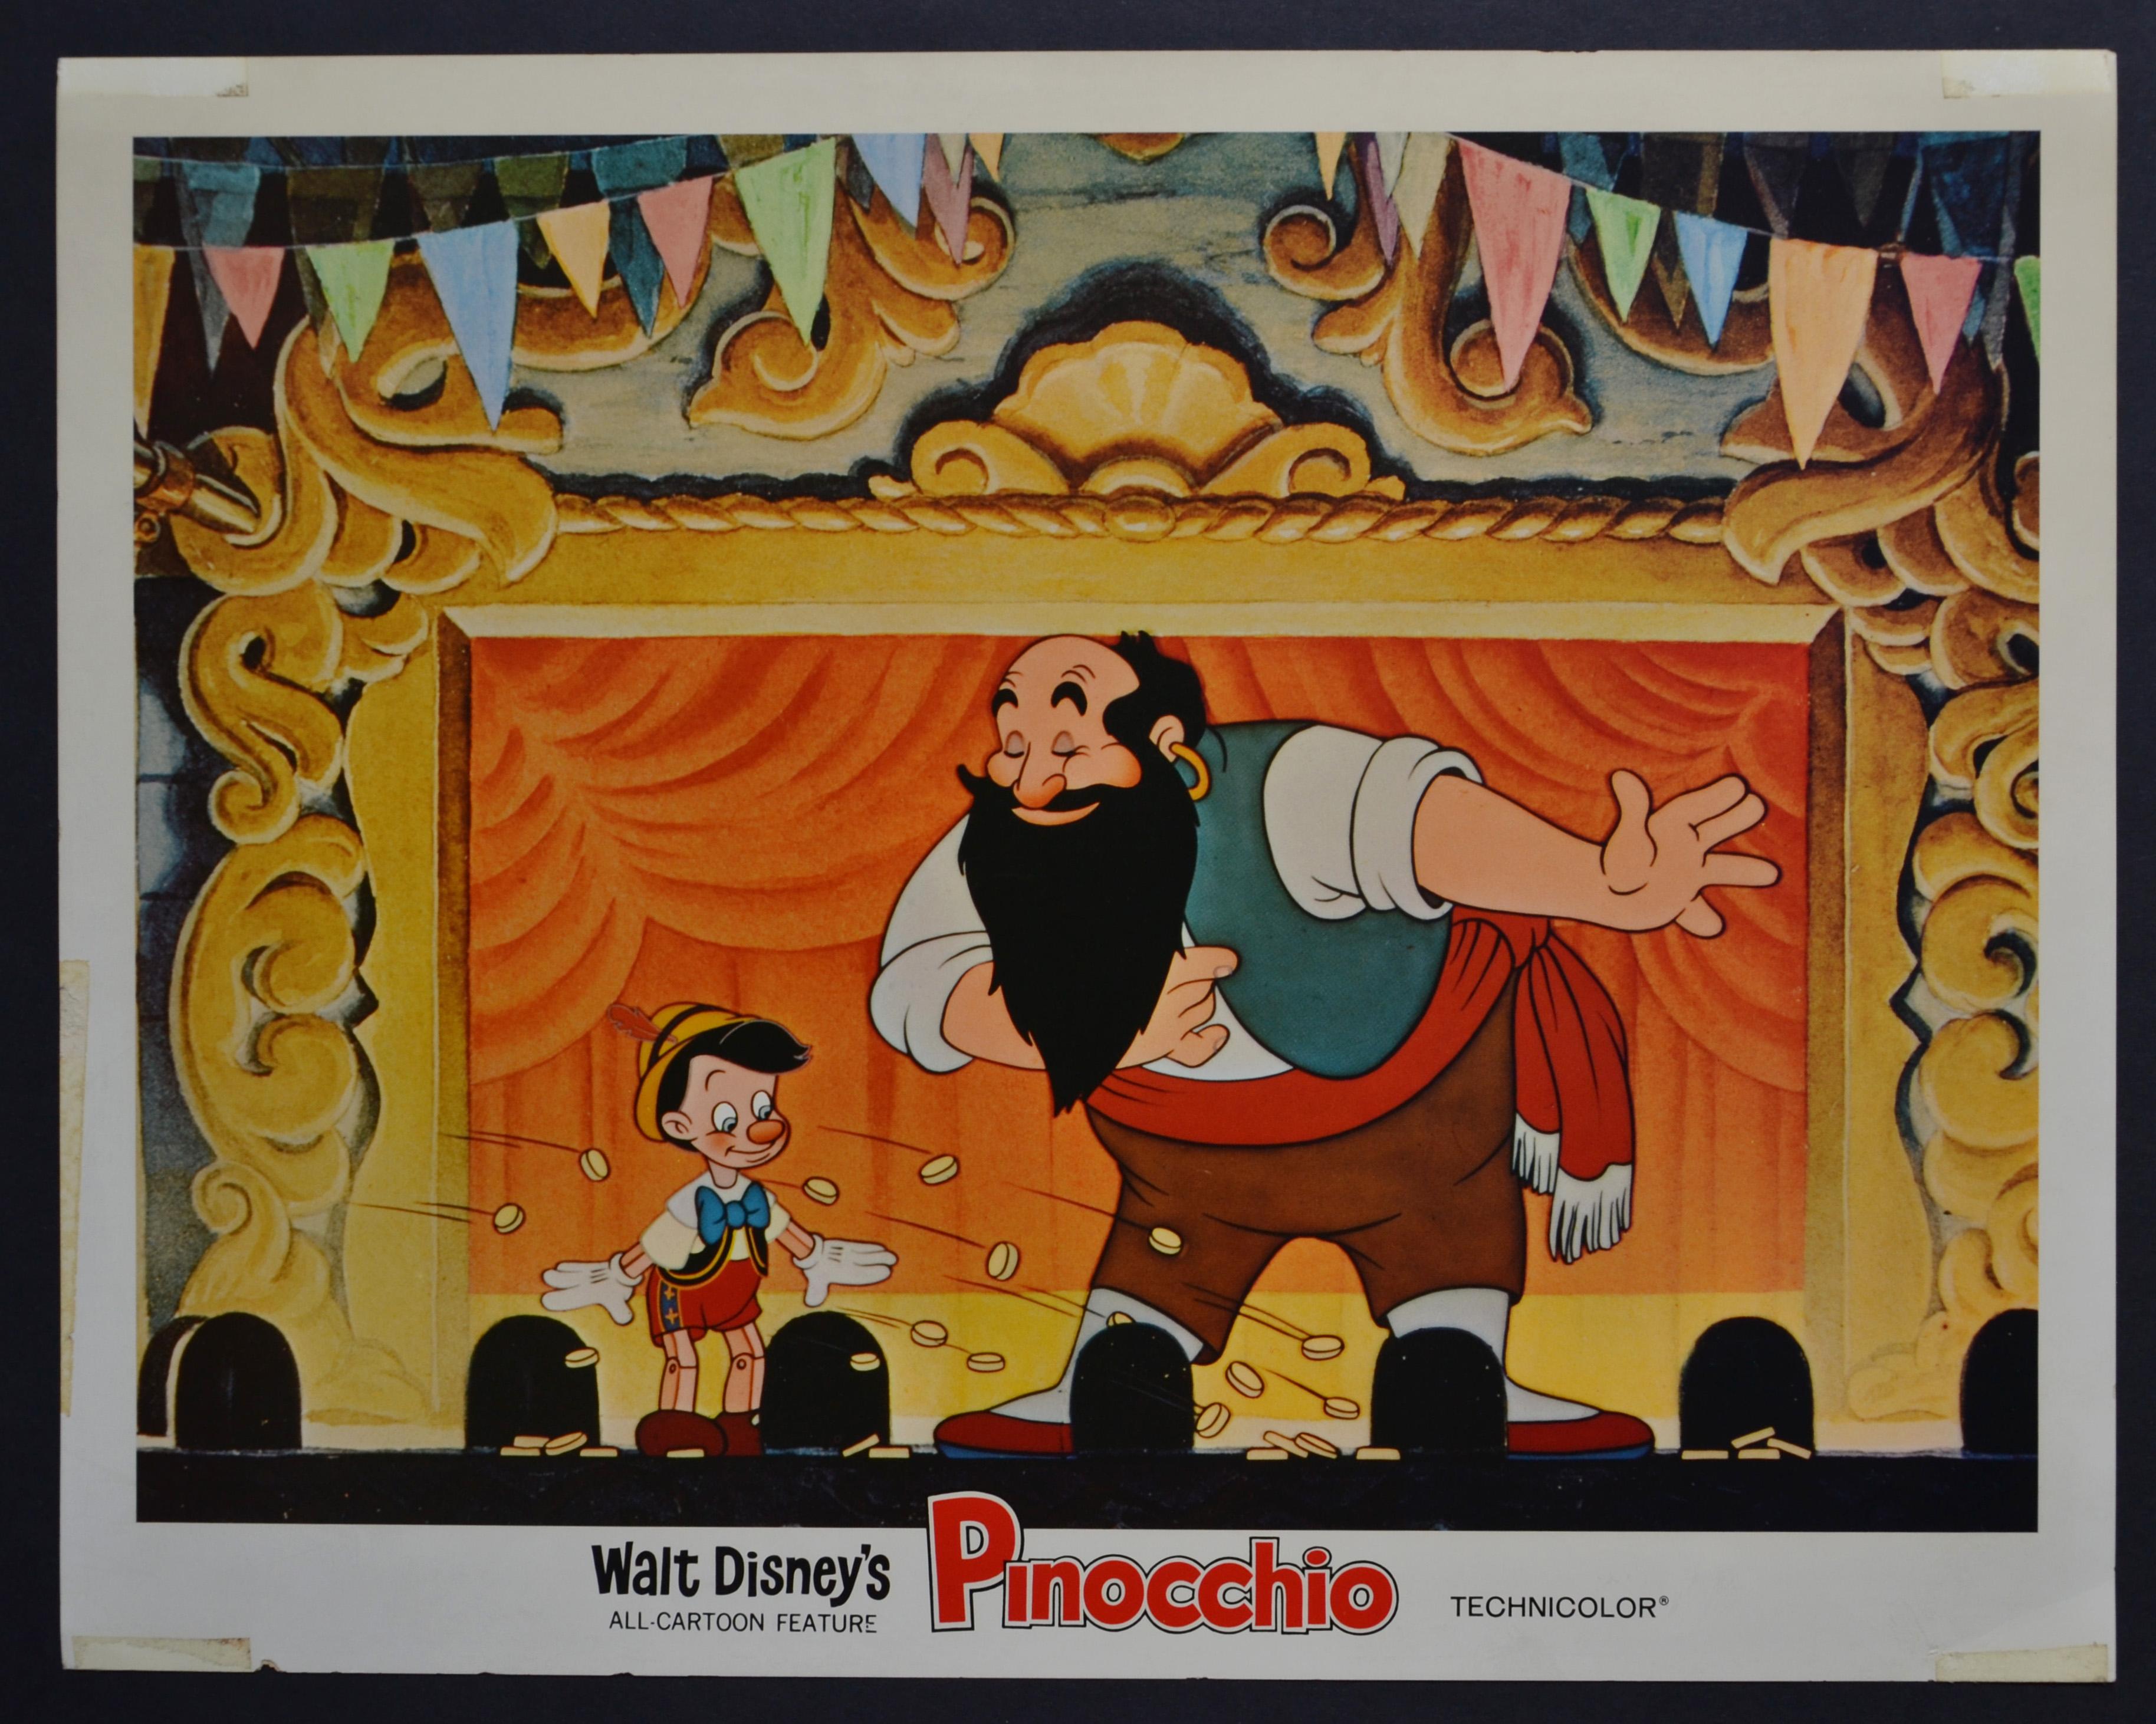 Unknown Interior Print – Original amerikanische Pinocchio-Lobby-Karte von Walt Disneys Film, USA 1940.